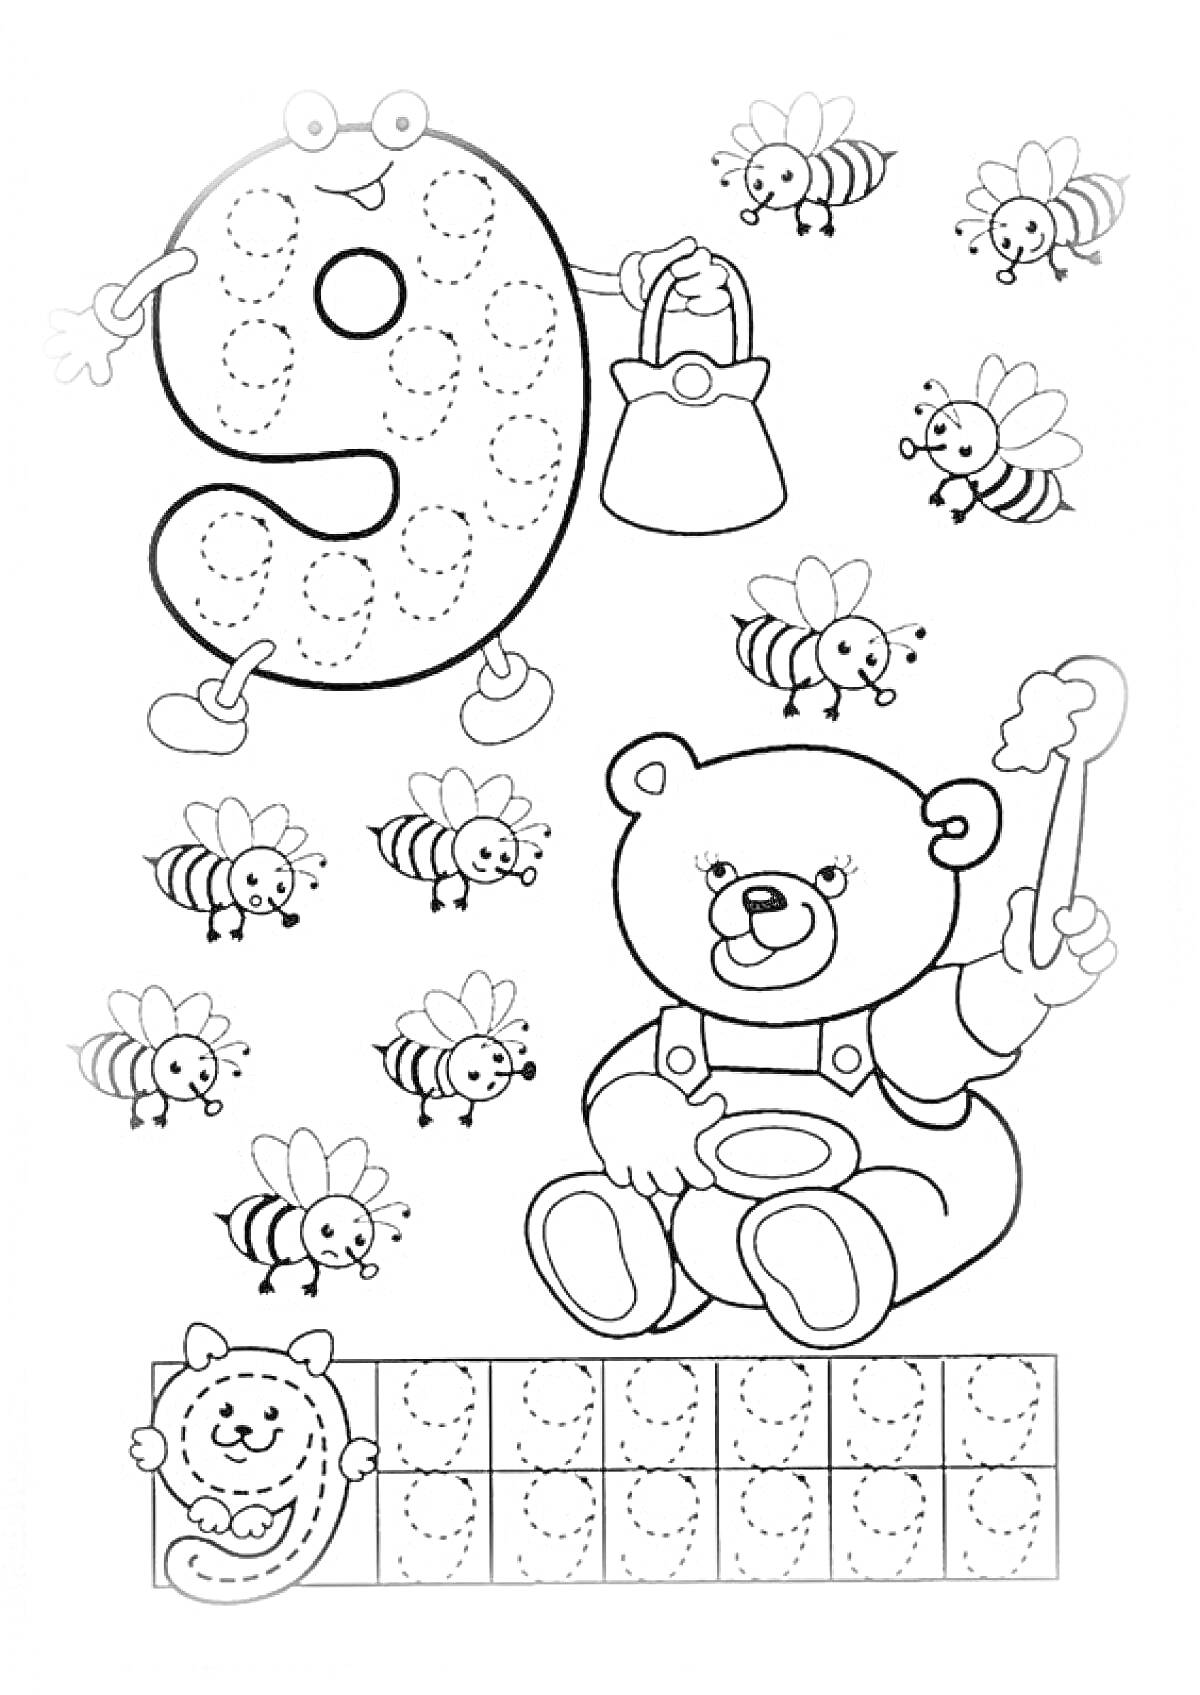  Раскраска с цифрой 9, медведем, пчелами, кошкой и клетками для написания цифры